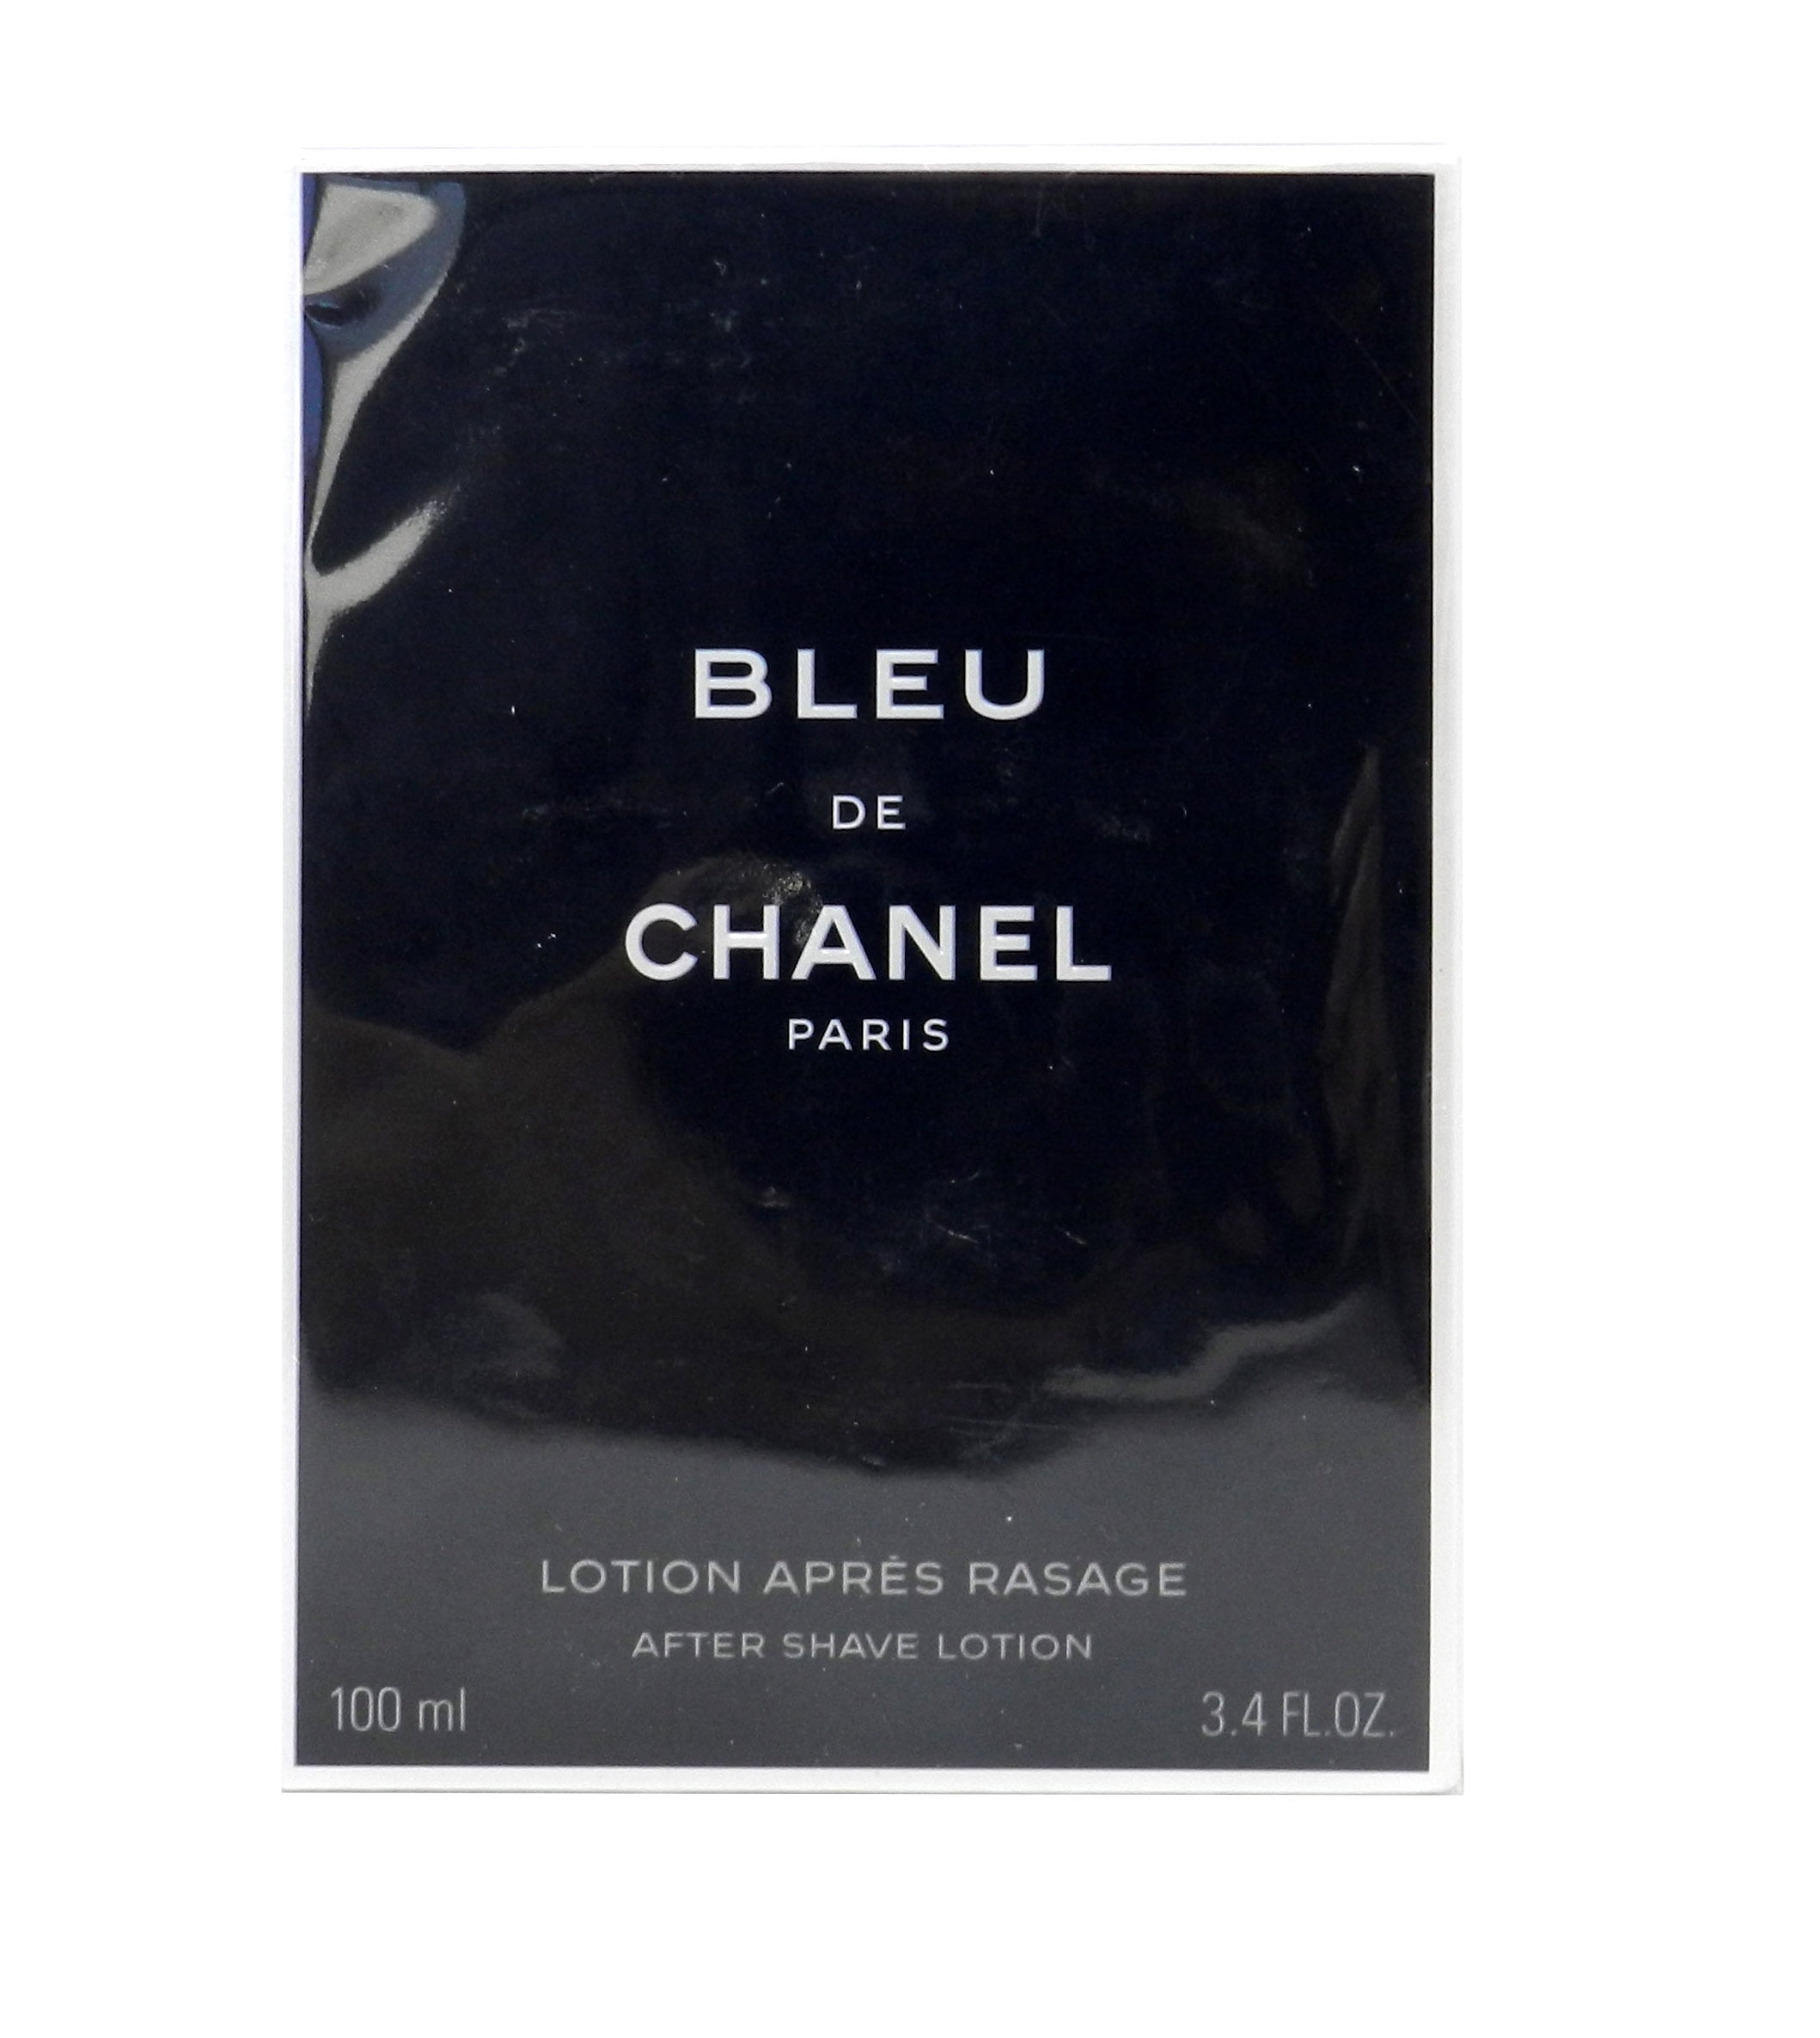 Chanel Bleu De Chanel After Shave Balm 90ml/3oz